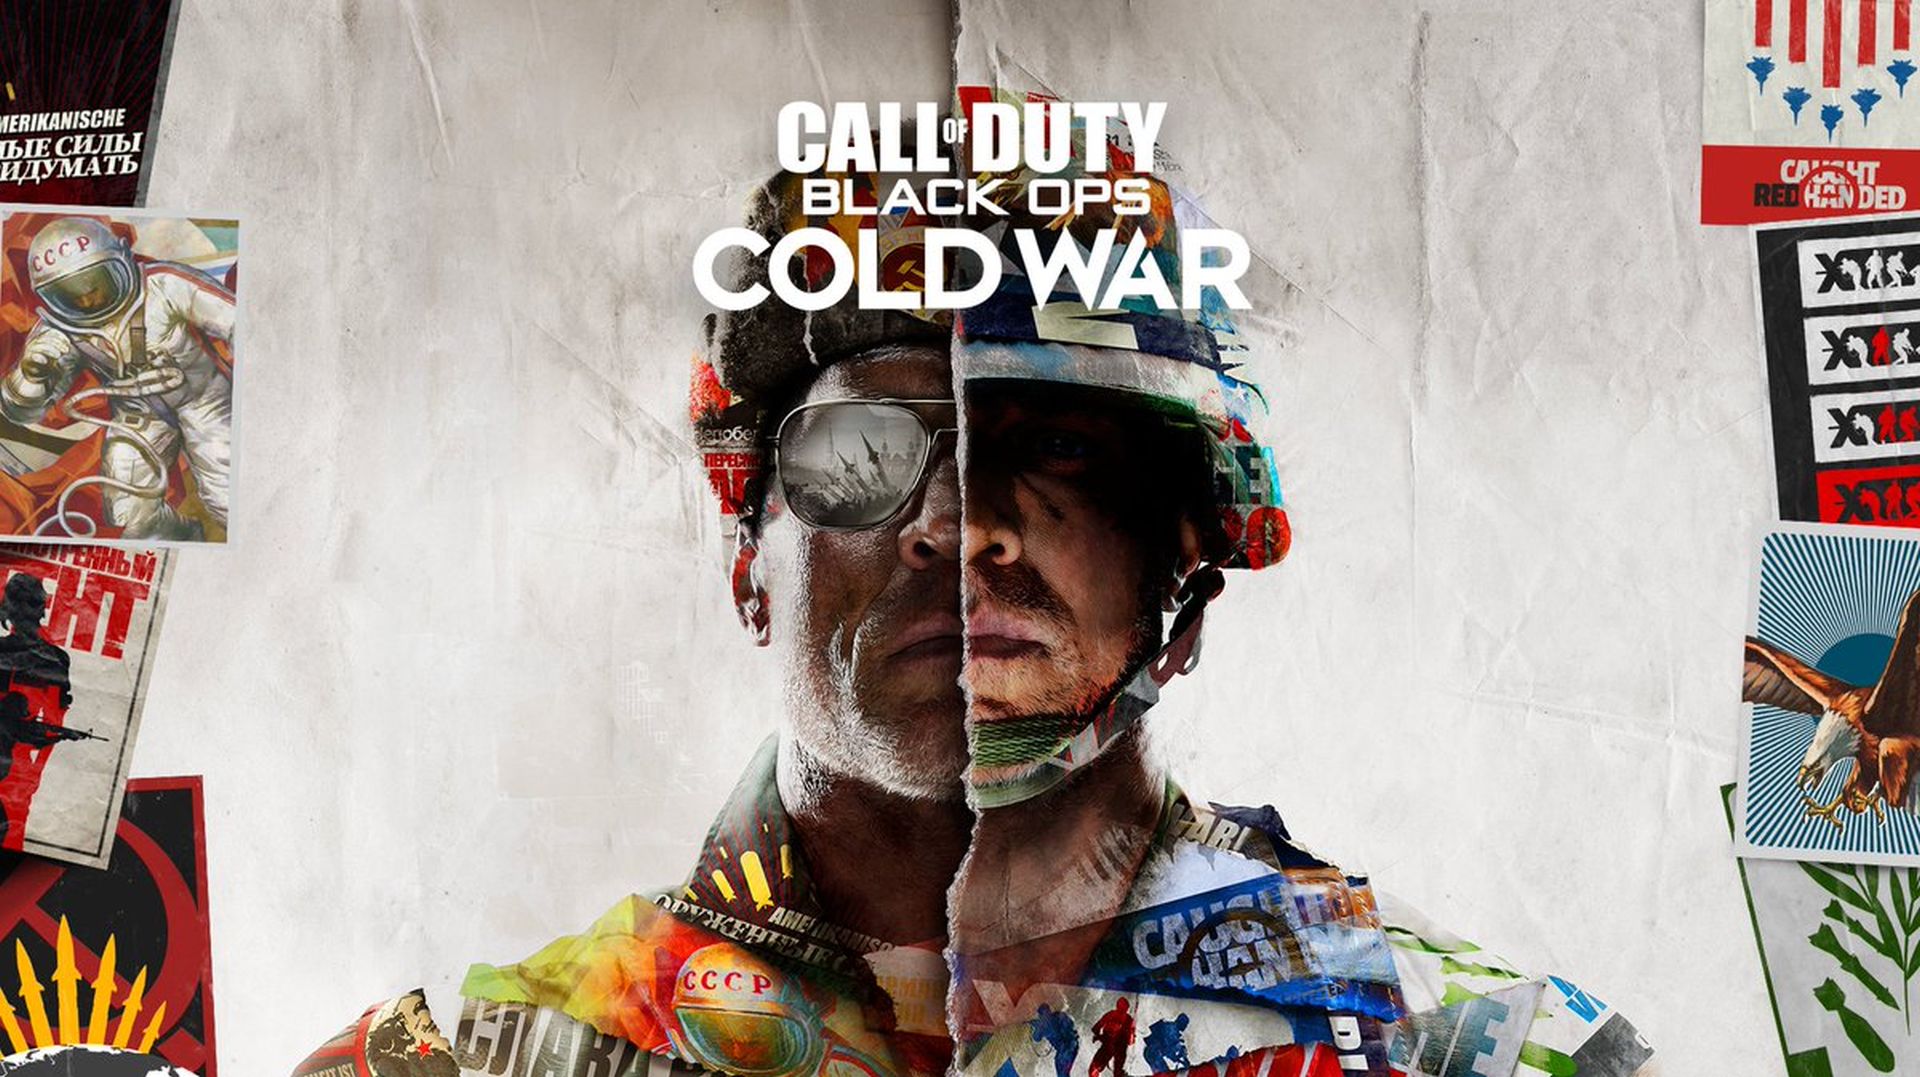 Call Of Duty: Black Ops - Perang Dingin Dituduhake Bocor Multiplayer Nuduhake Peta Potensial